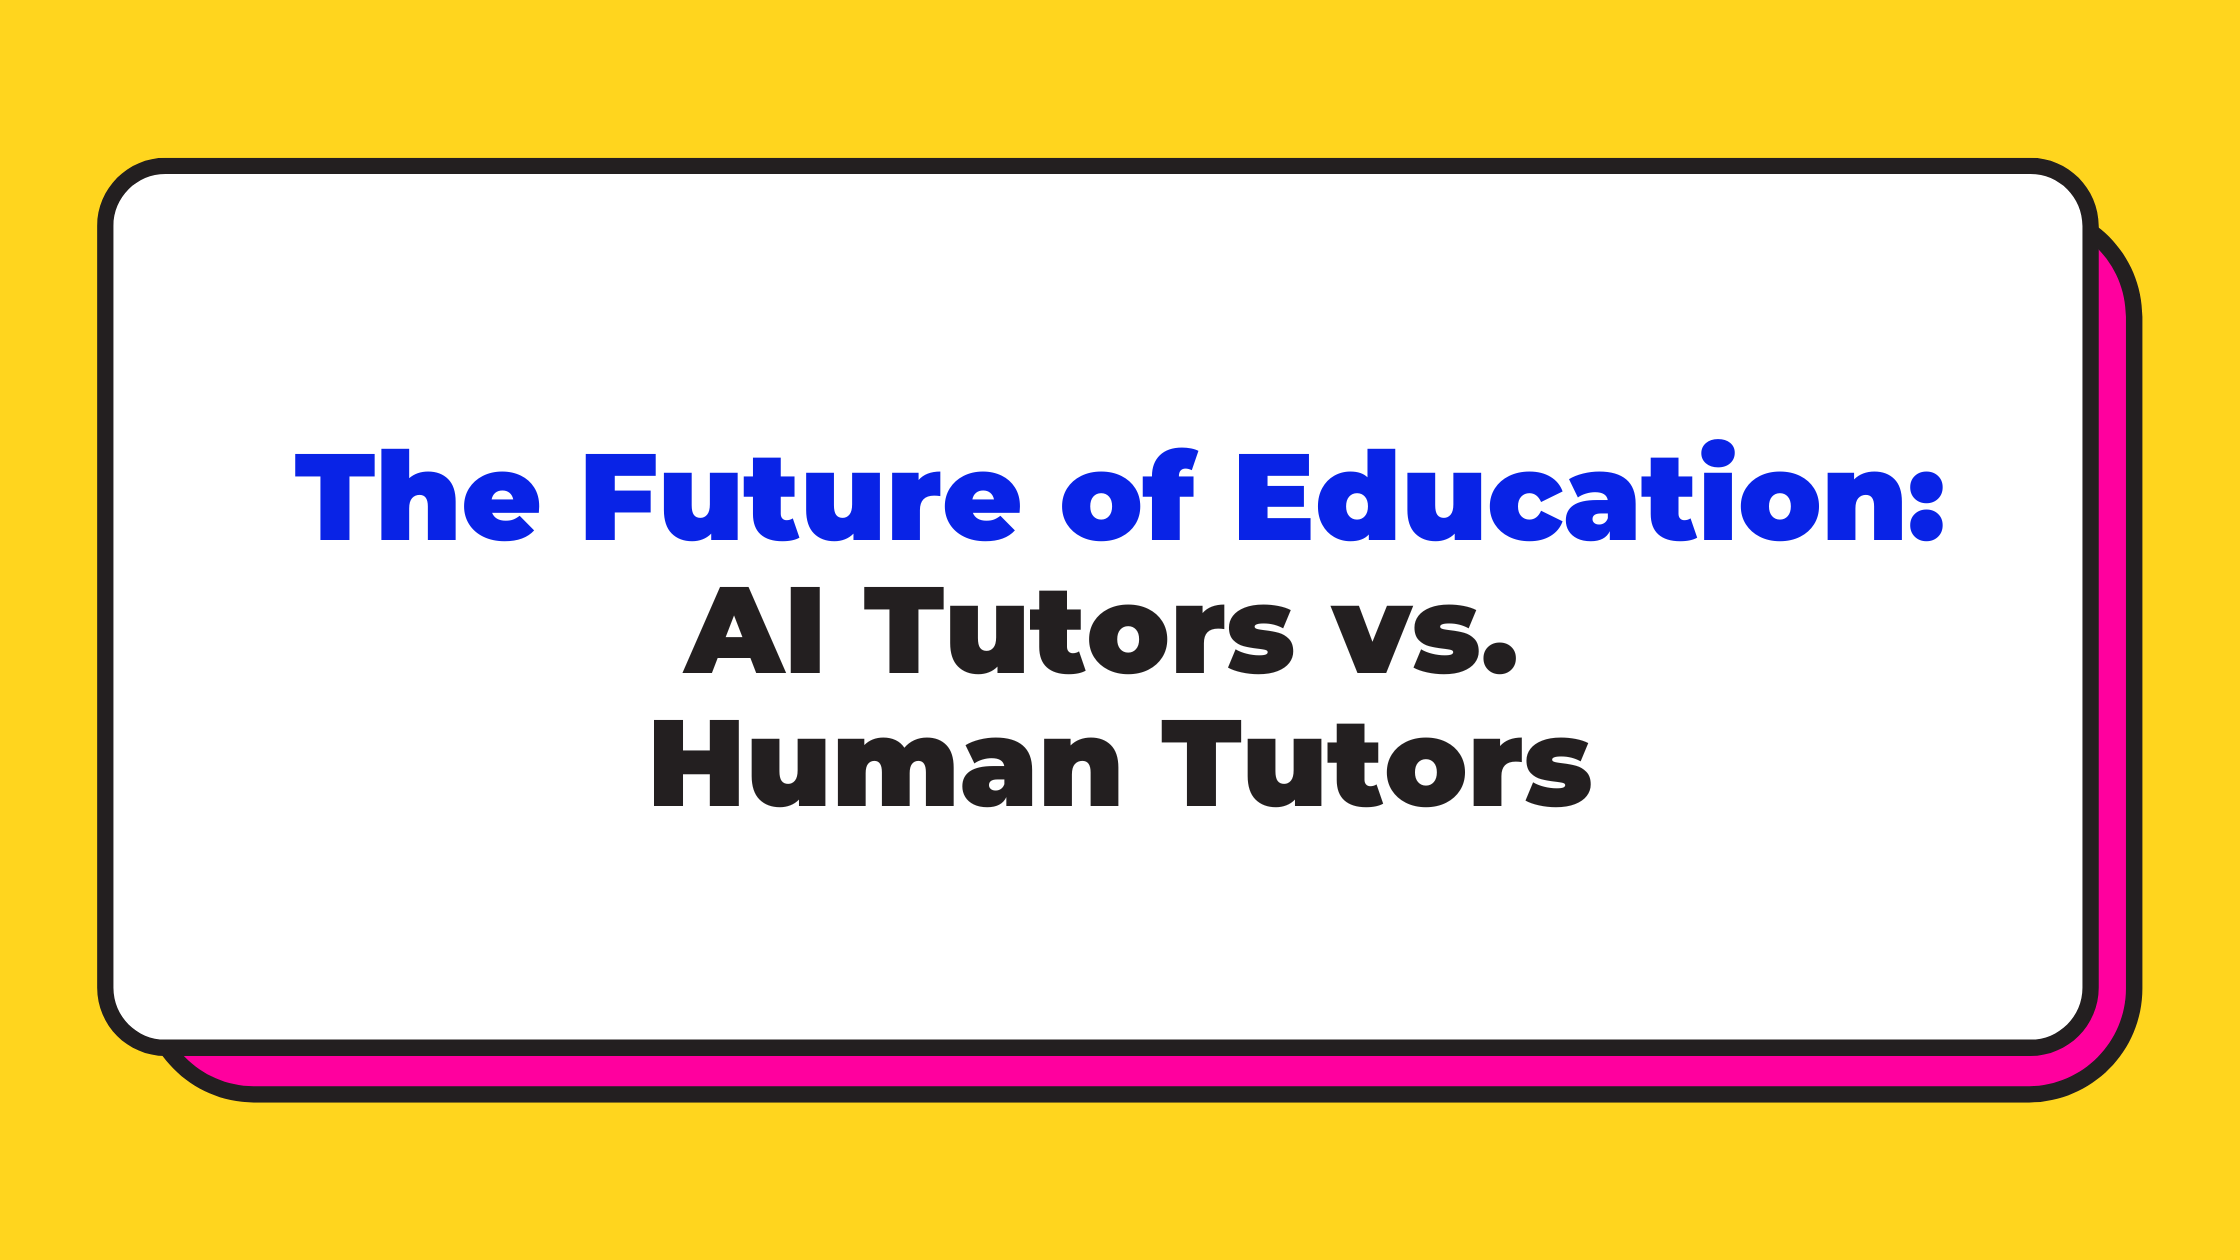 The Future of Education: AI Tutors vs. Human Tutors